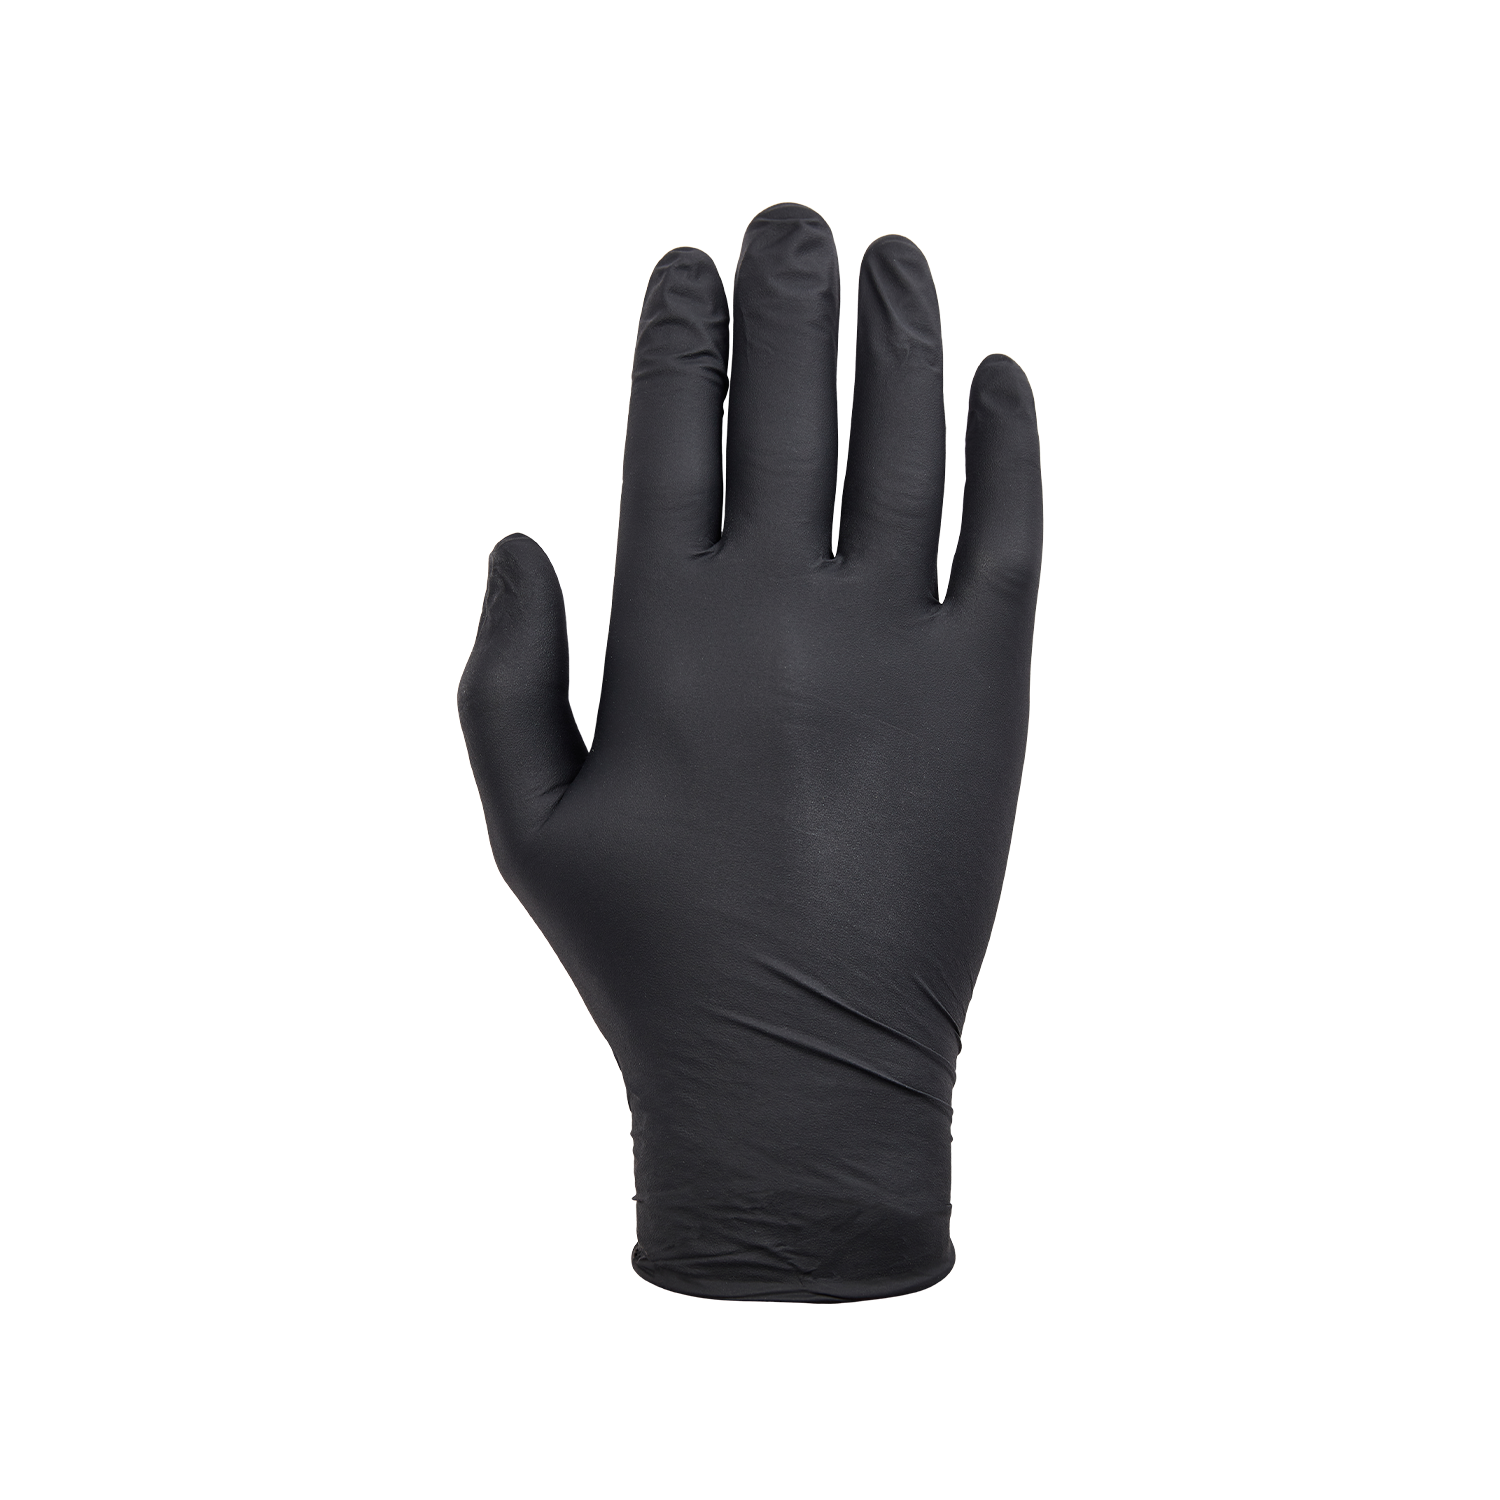 NORSE disposable zwarte nitril handschoenen voor eenmalig gebruik - maat 10/XL